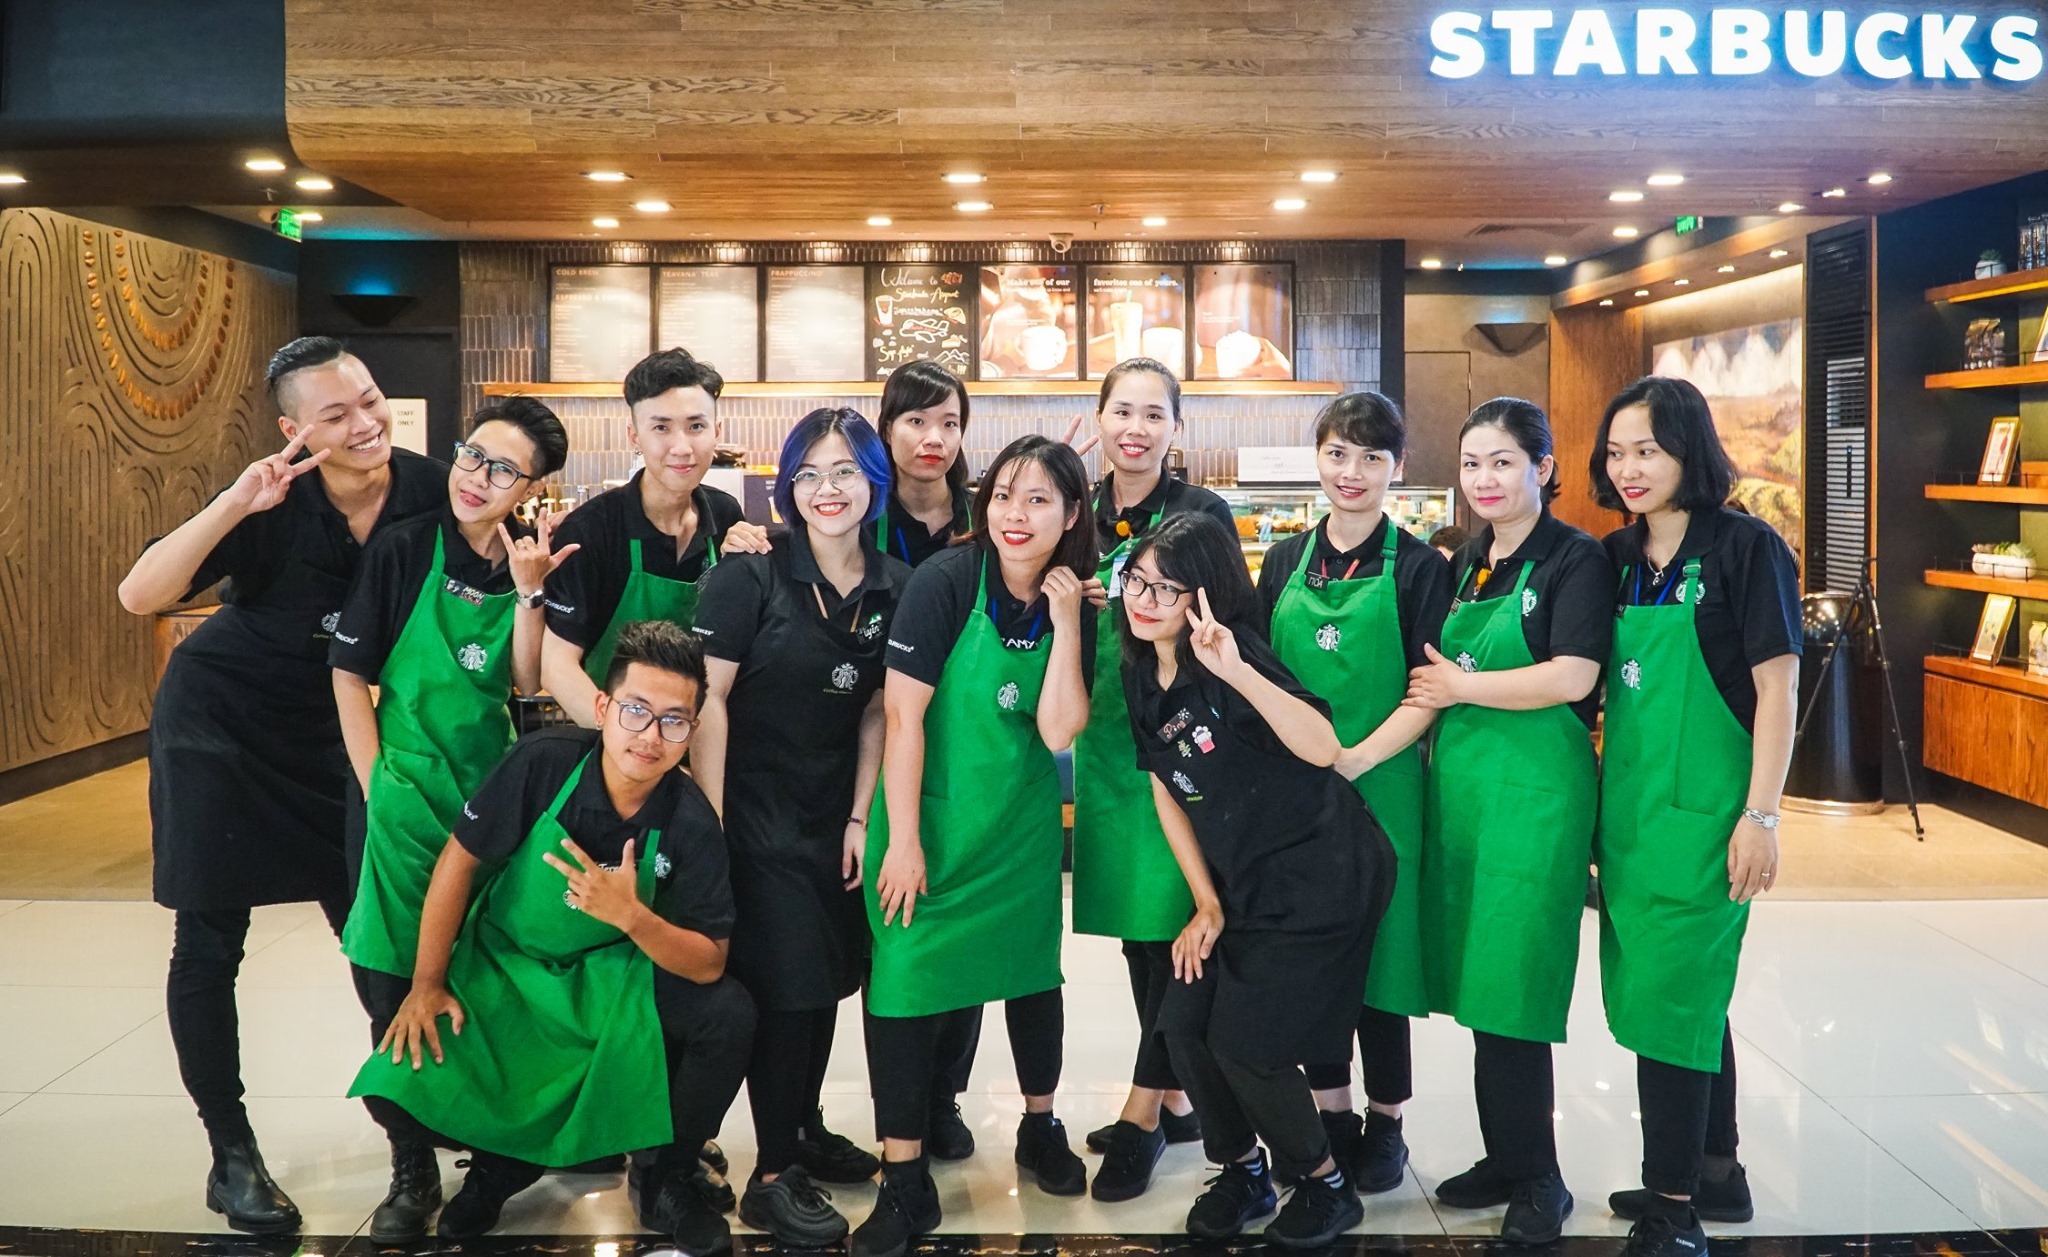 Dong phuc Starbucks17 - Đồng phục Starbucks